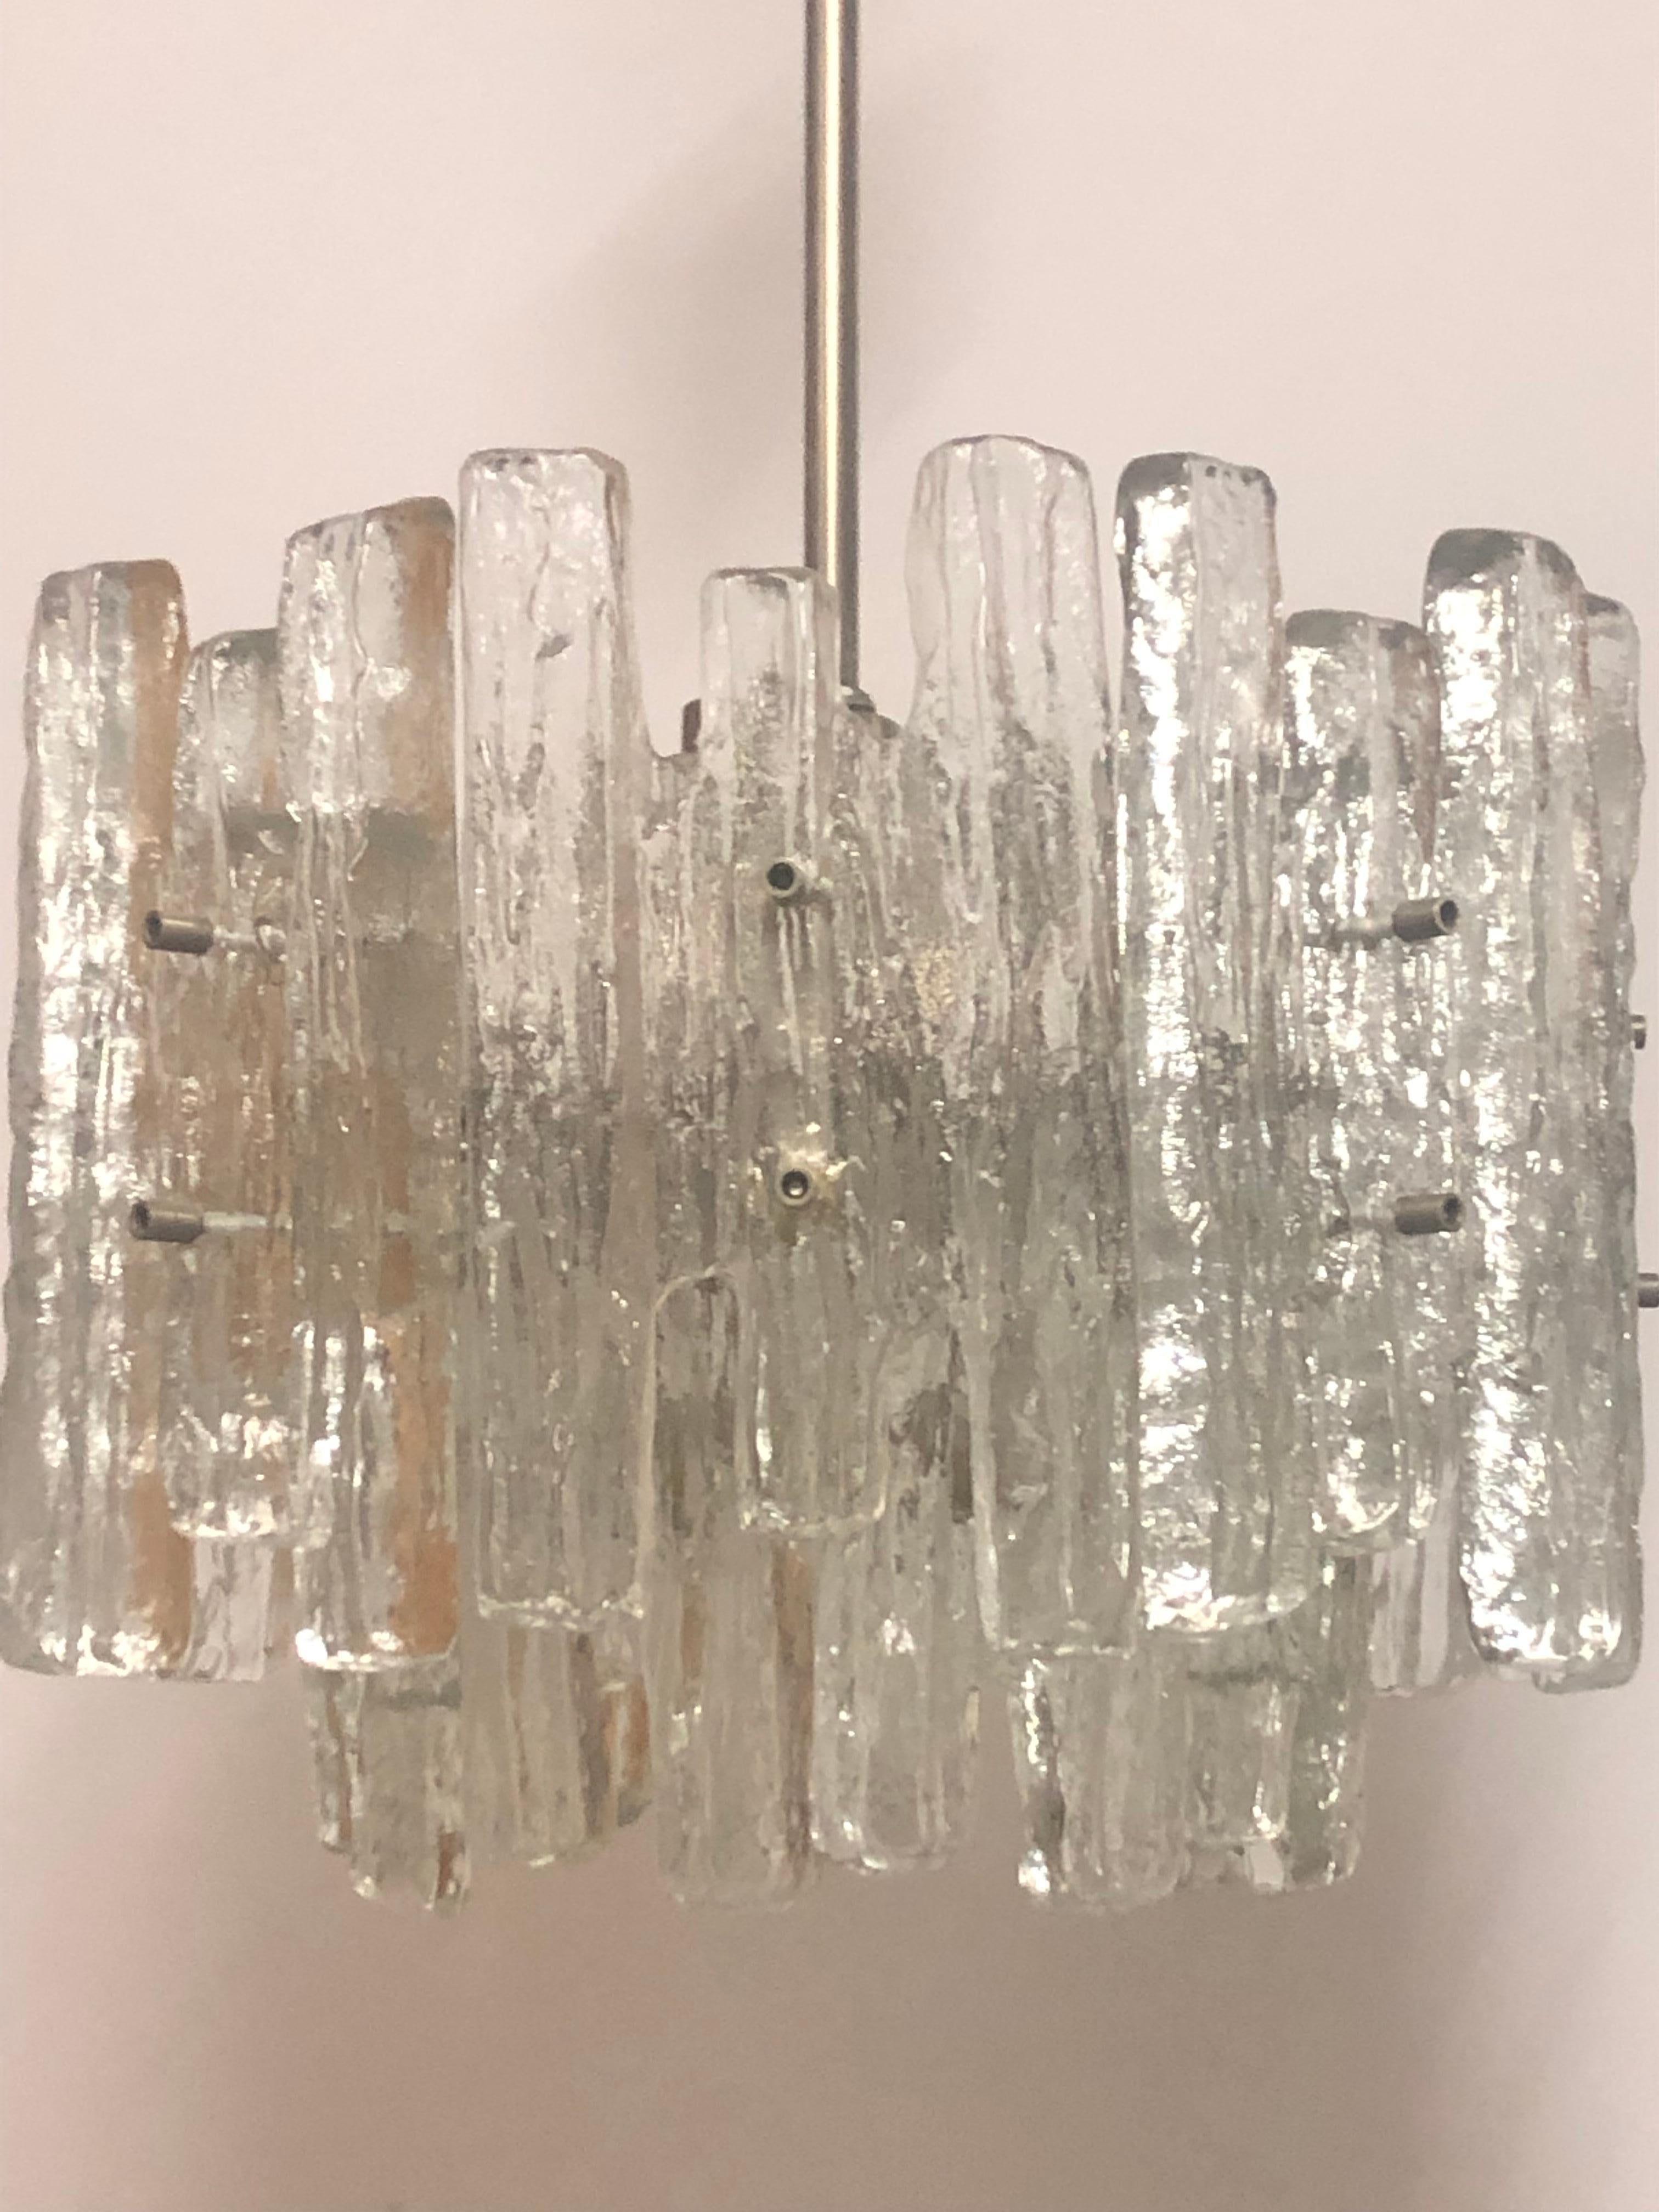 Moderner Kronleuchter aus Eisglas von J.T.Kalmar, Österreich, 1960er Jahre.
Hergestellt aus Murano-Glas und Nickelrahmen.
